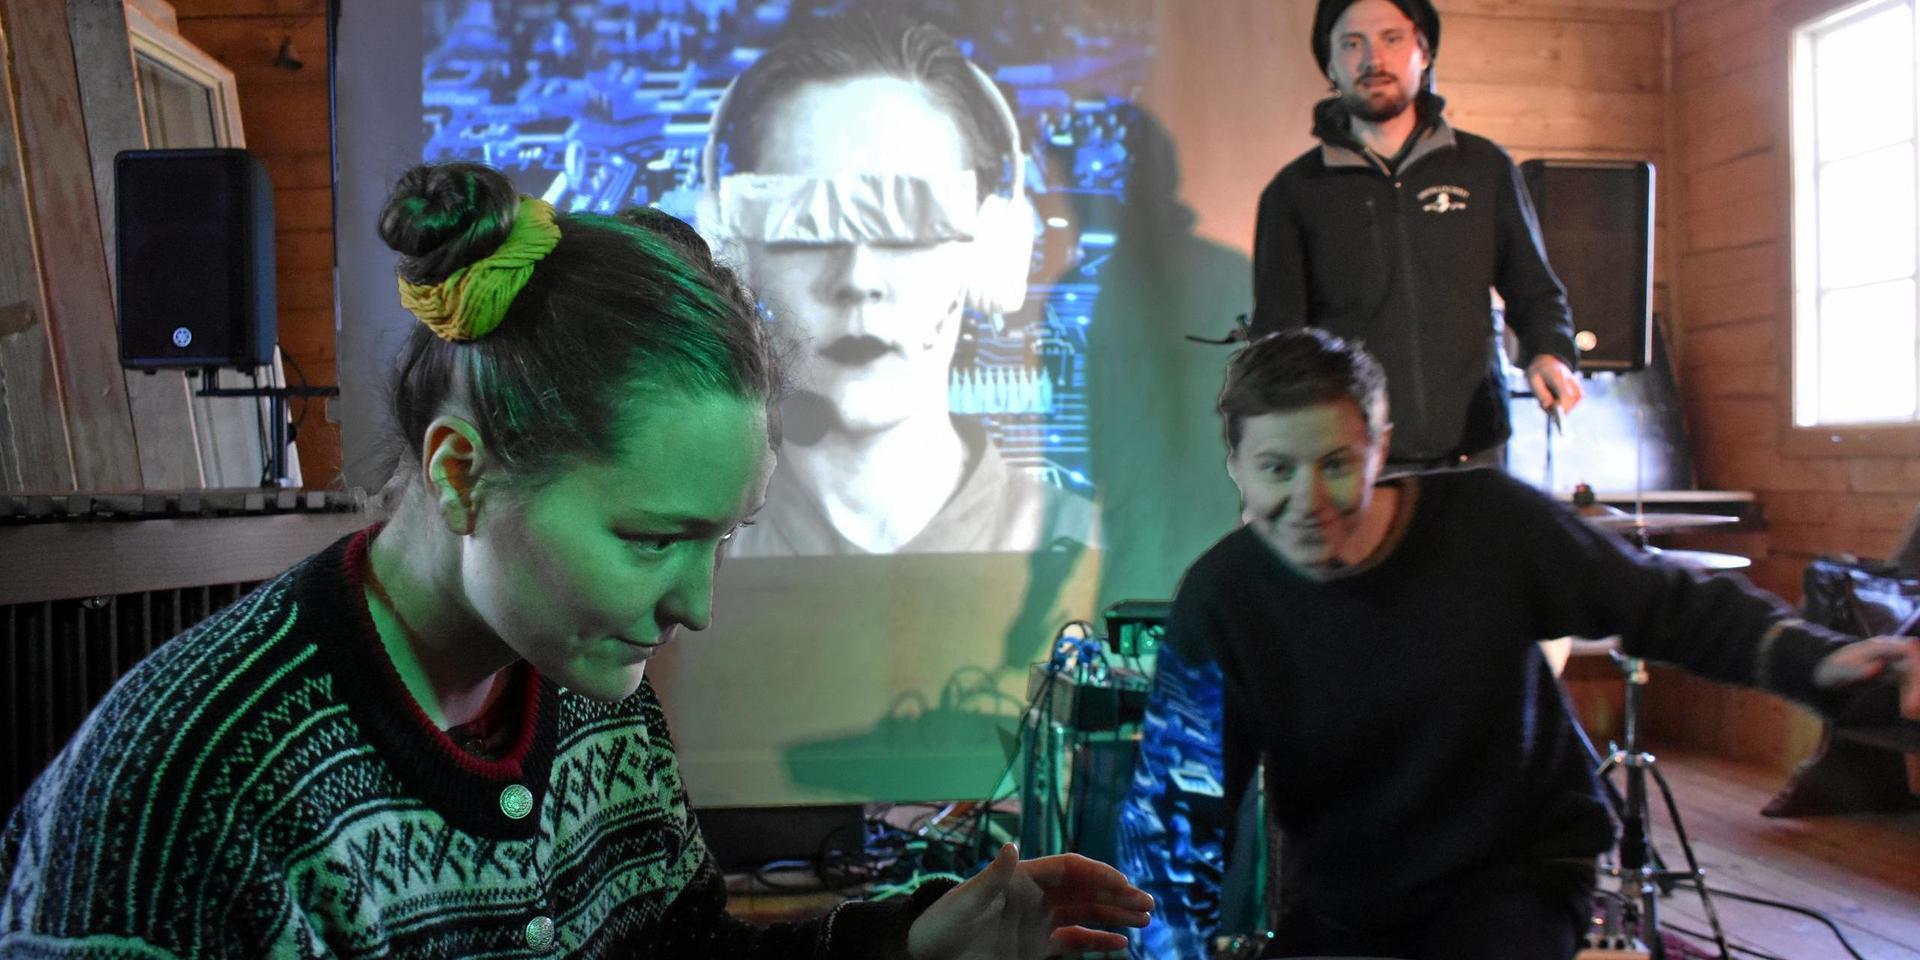 Gruppen improviserar kring en scén där de med hjälp av en bronsgong får kontakt med en artificiell varelse, som också projiceras på filmduken. Från vänster Fia Forslund, Izabelle Norén och Jonathan Kabell.